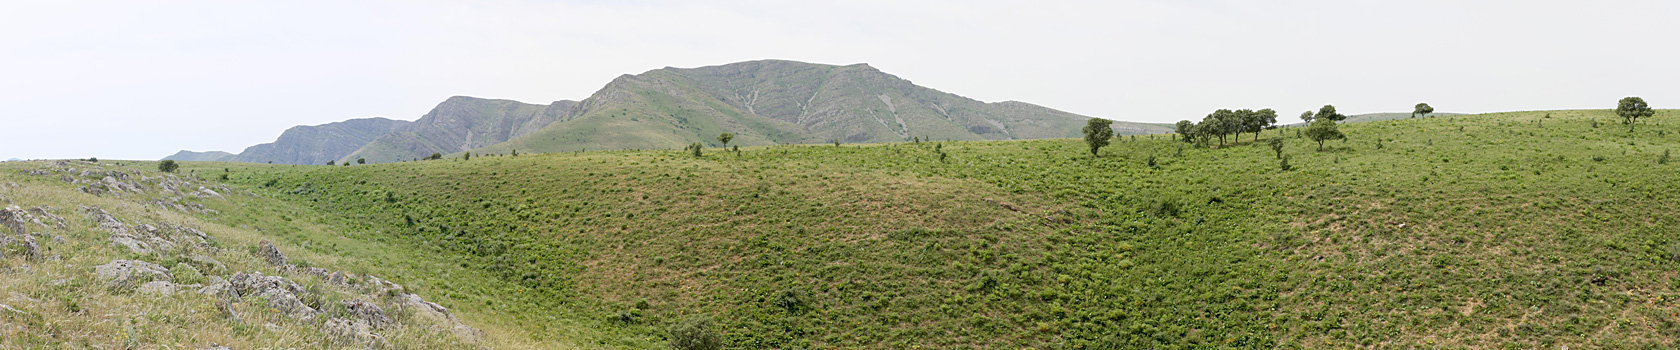 Горы Каракус, изображение ландшафта.